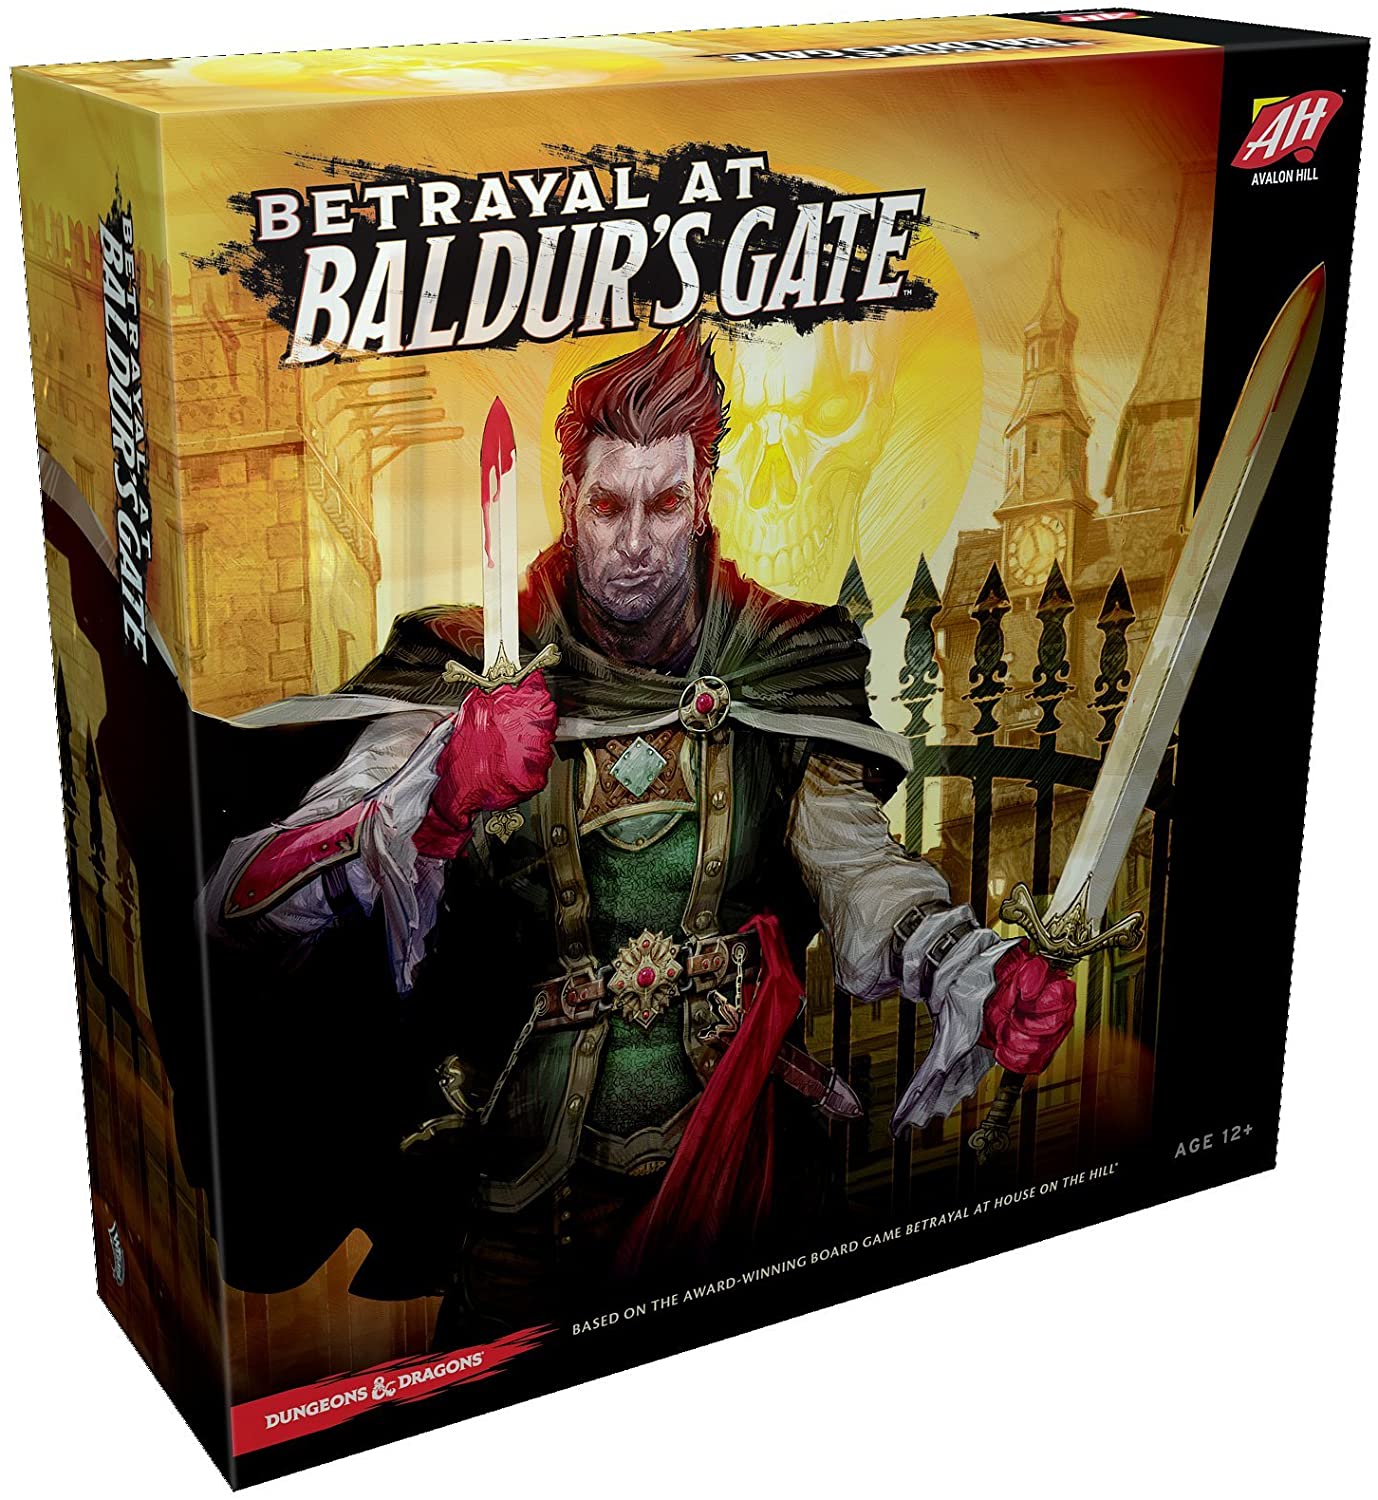 Betrayal at Balder's Gate